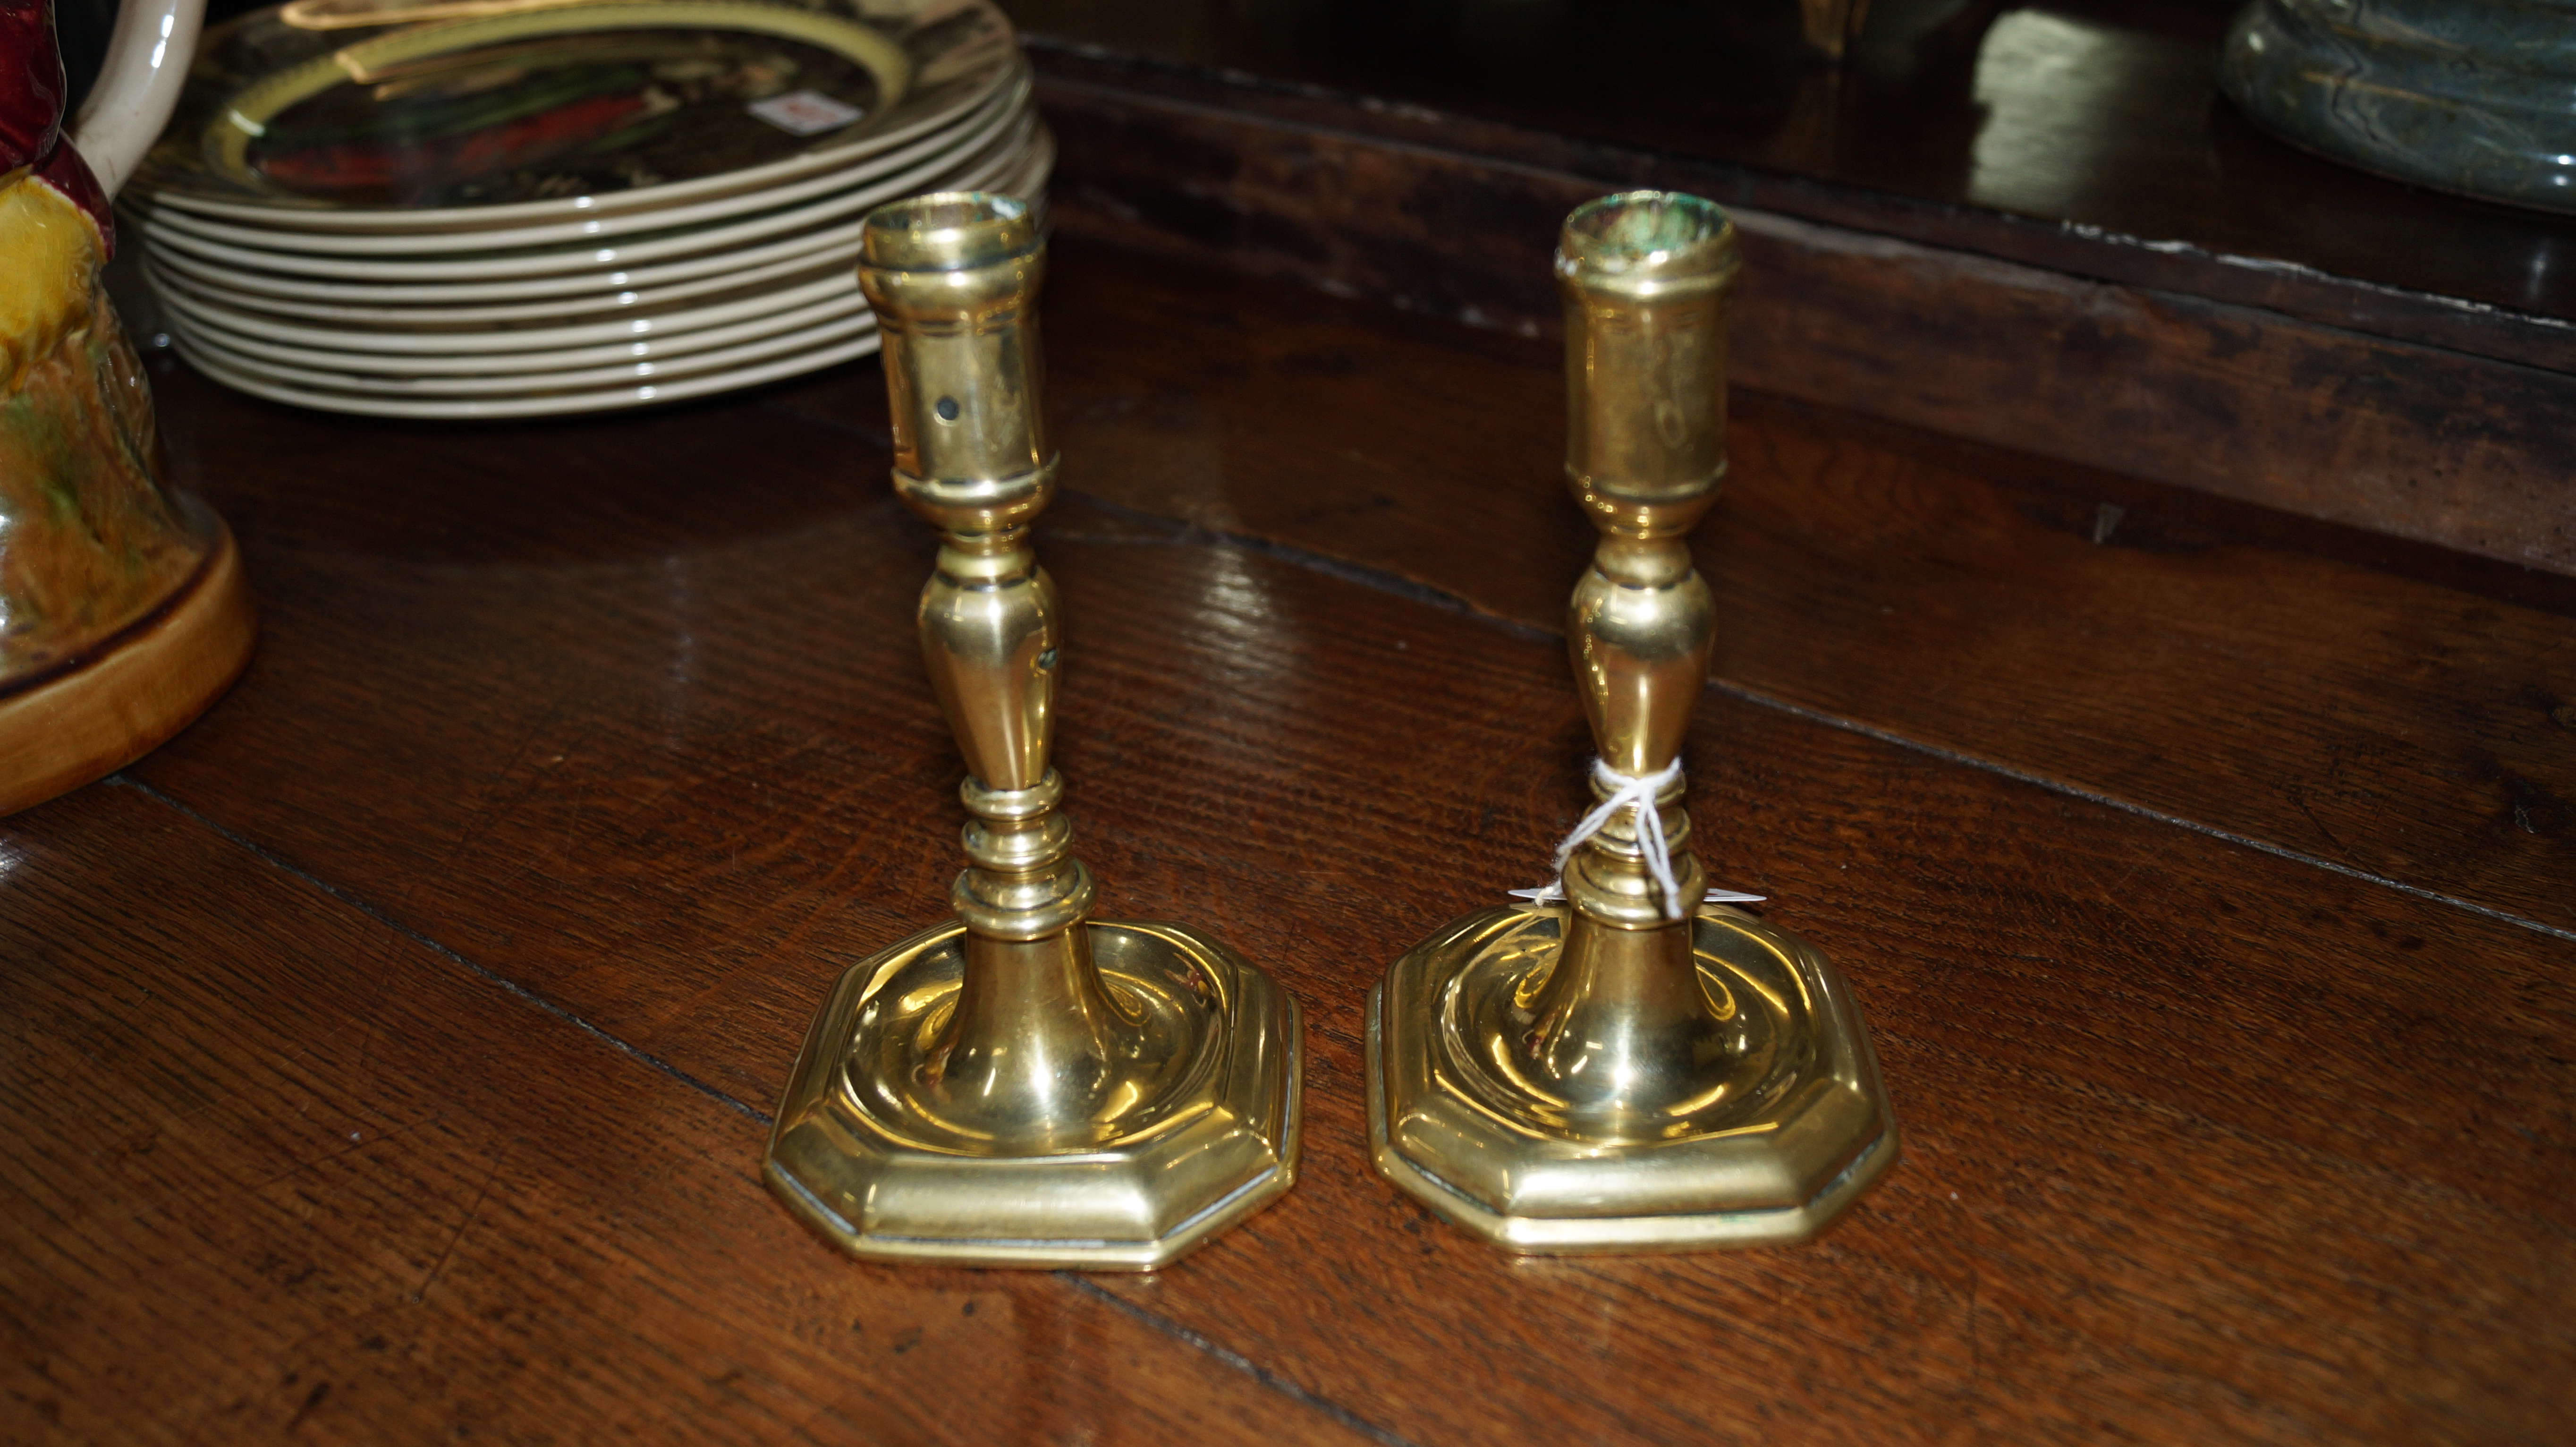 A pair of 18th century cast brass candlesticks, 14cm high.